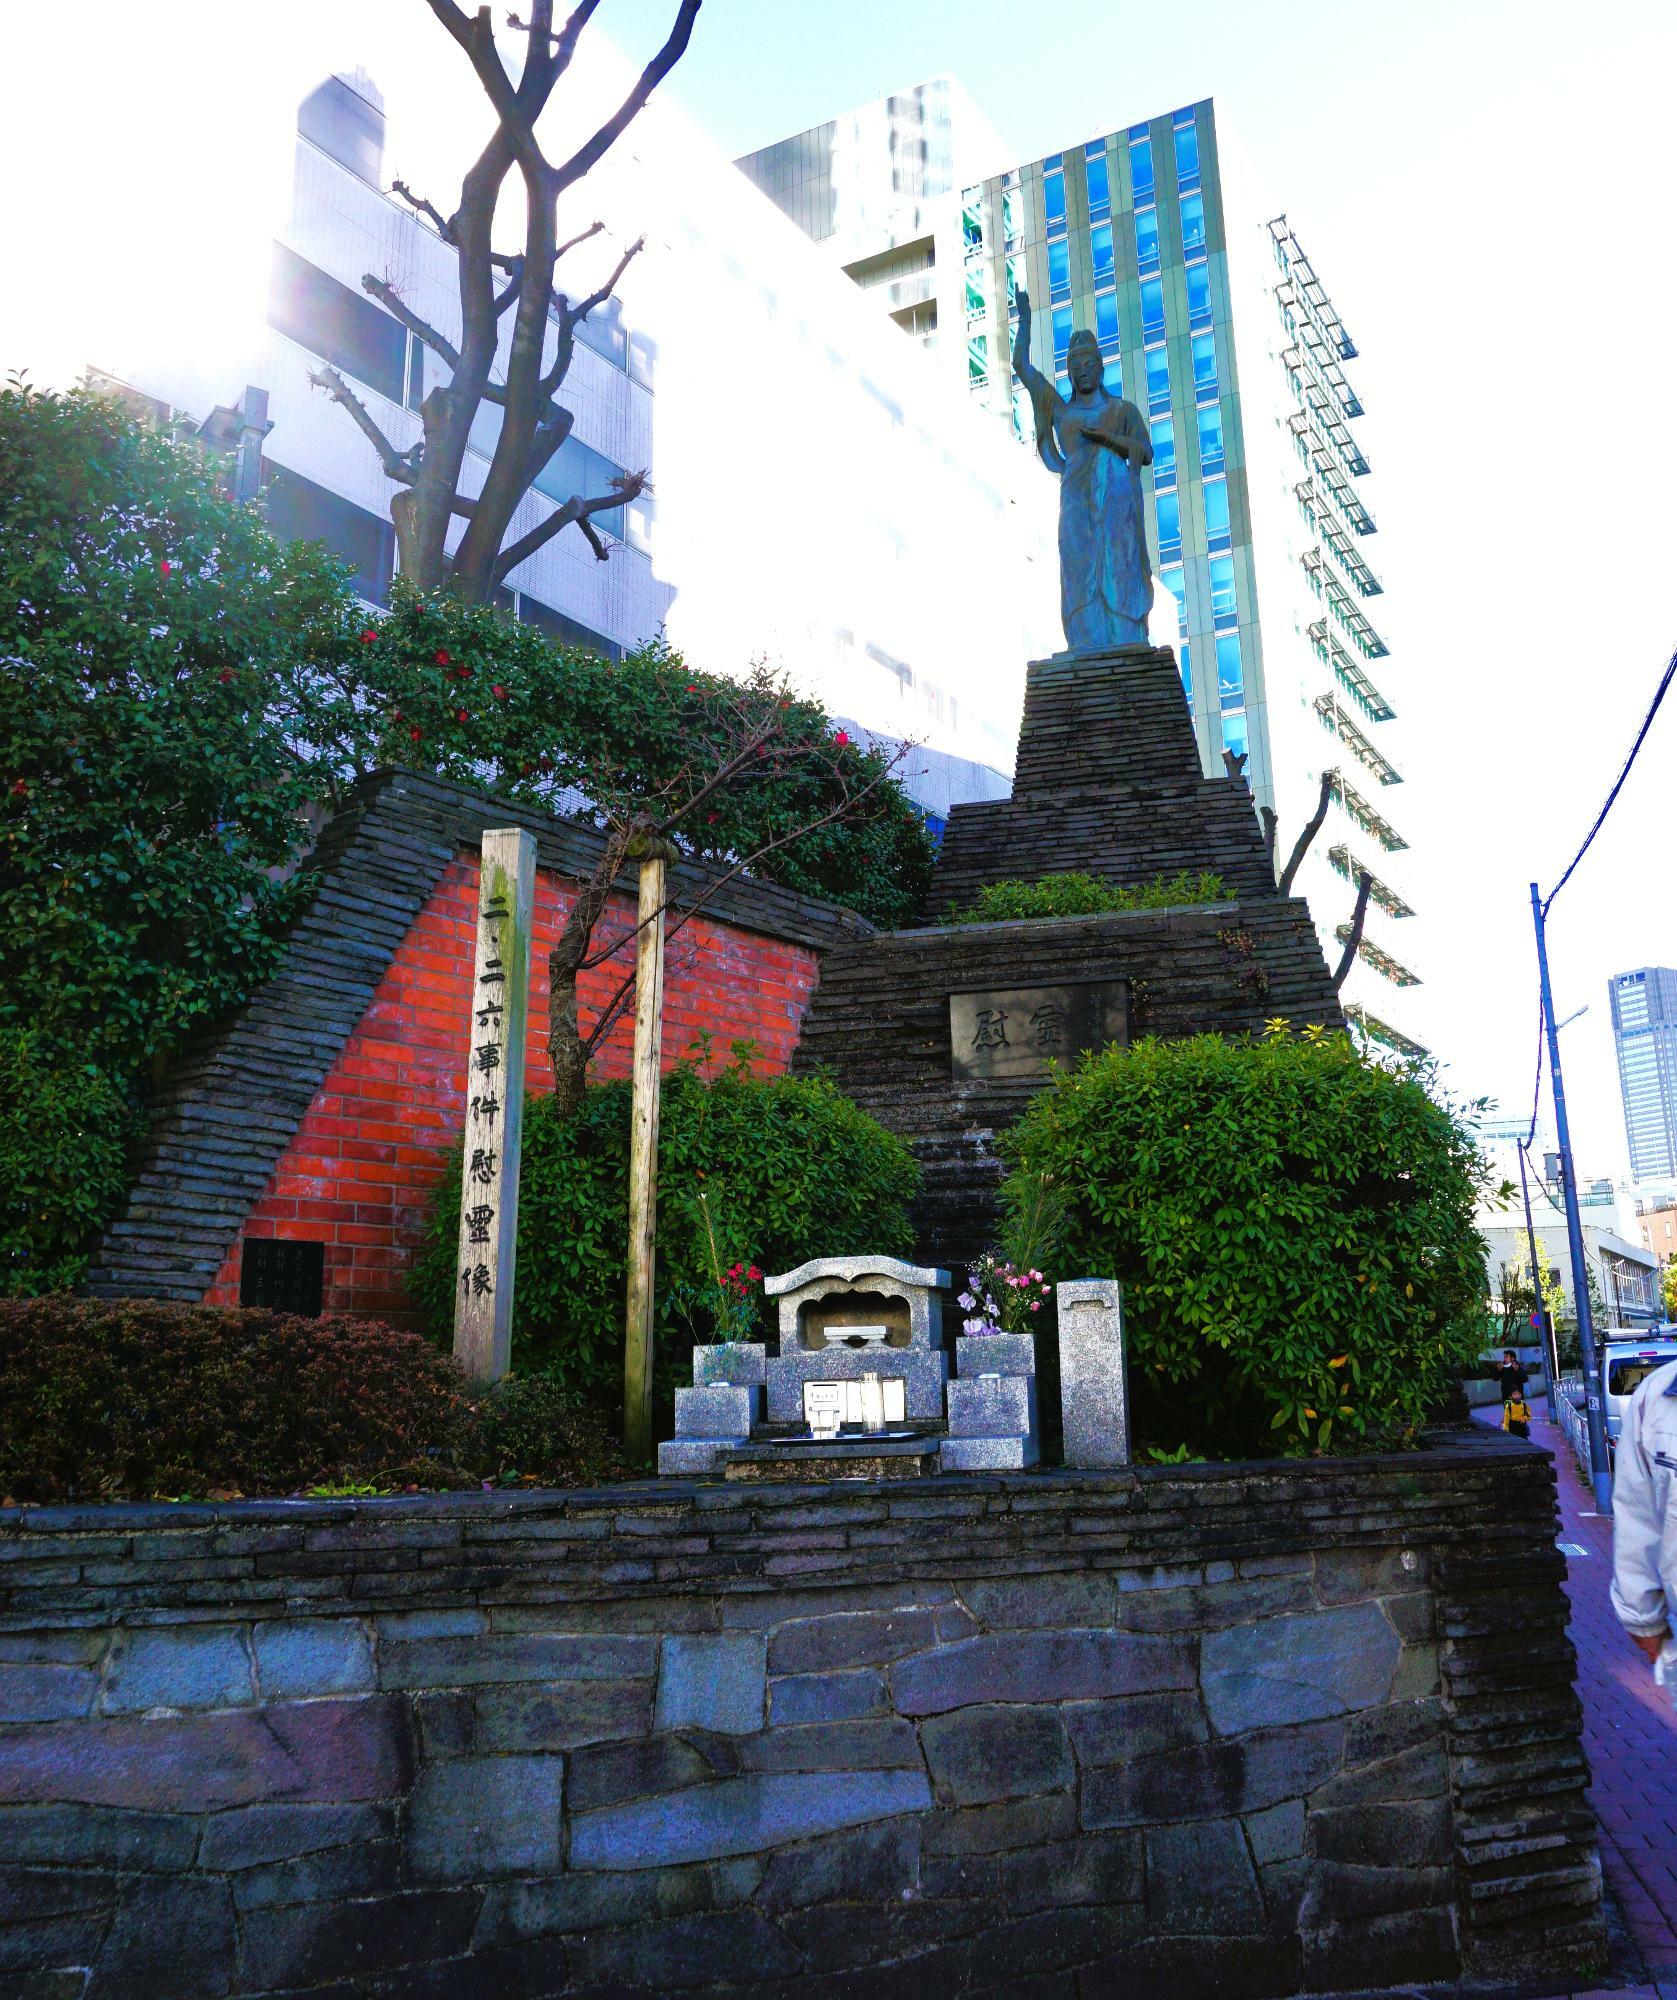 二・二六事件に関与して処刑された人と事件で命を落とした犠牲者の慰霊碑。 1965年に旧東京陸軍刑務所敷地に建立されました。いつ通っても観音像の足元にはみずみずしい献花が供えられています。